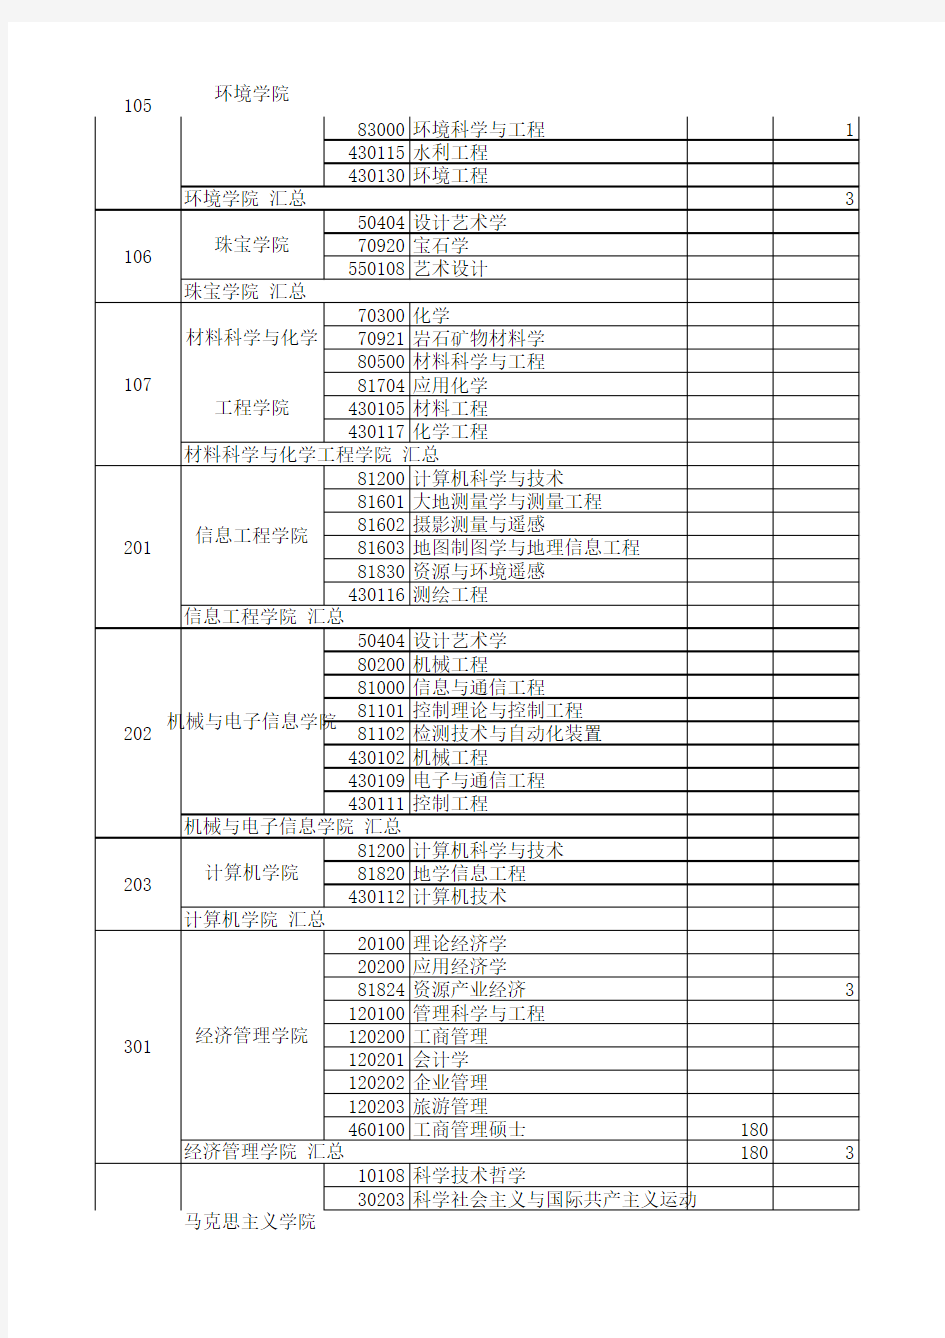 中国地质大学(武汉)2010年硕士生报考录取情况统计表